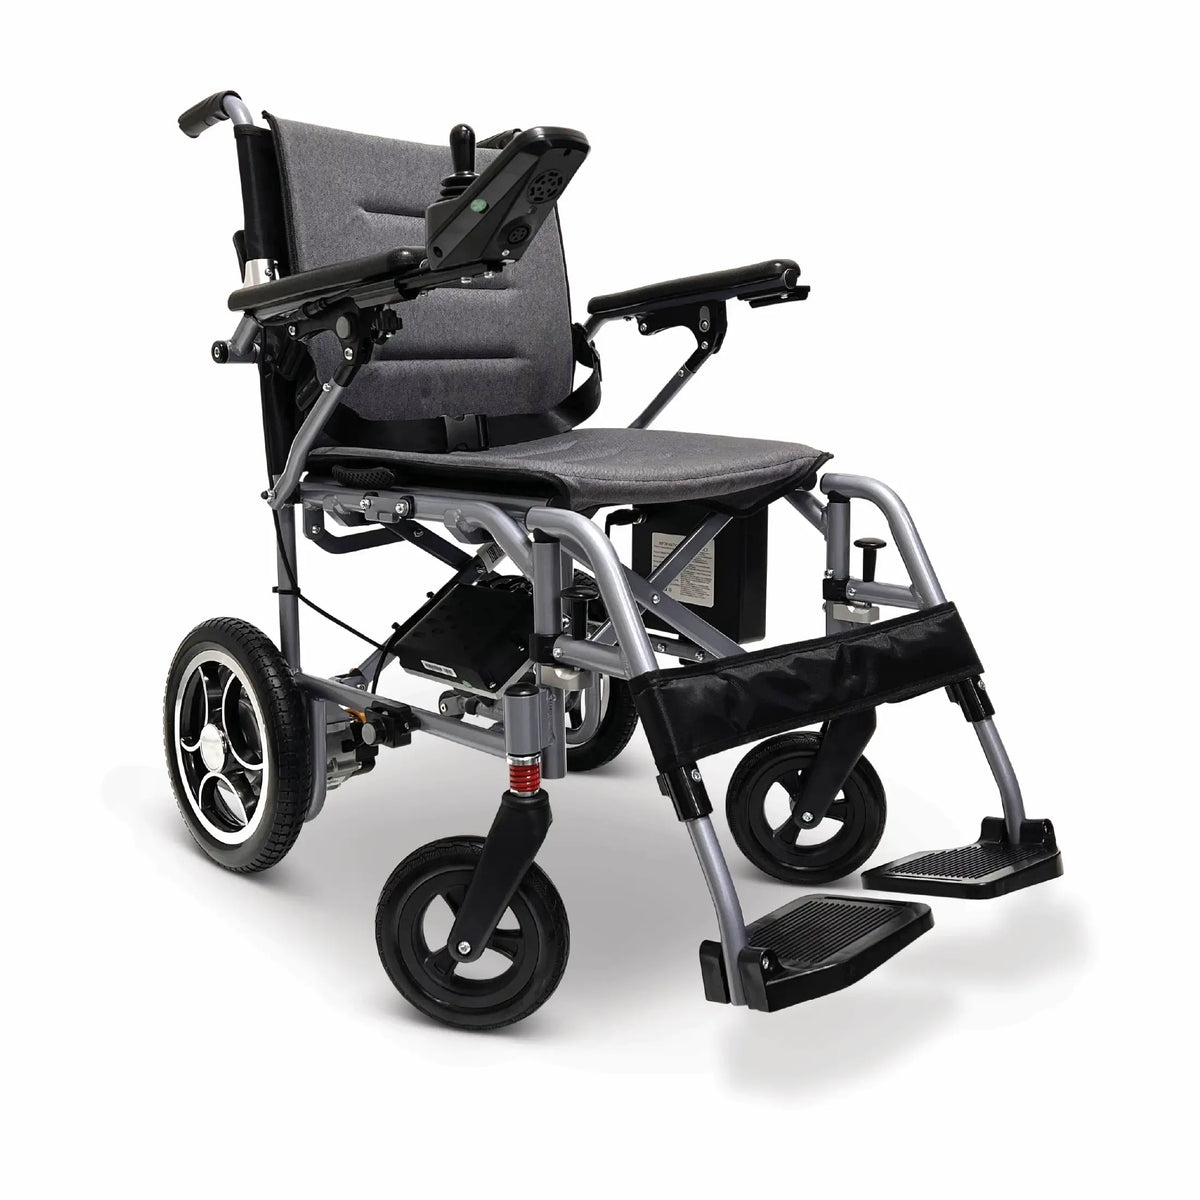 X-7 ComfyGO Lichtgewicht opvouwbare elektrische rolstoel voor reizen met afstandsbediening 